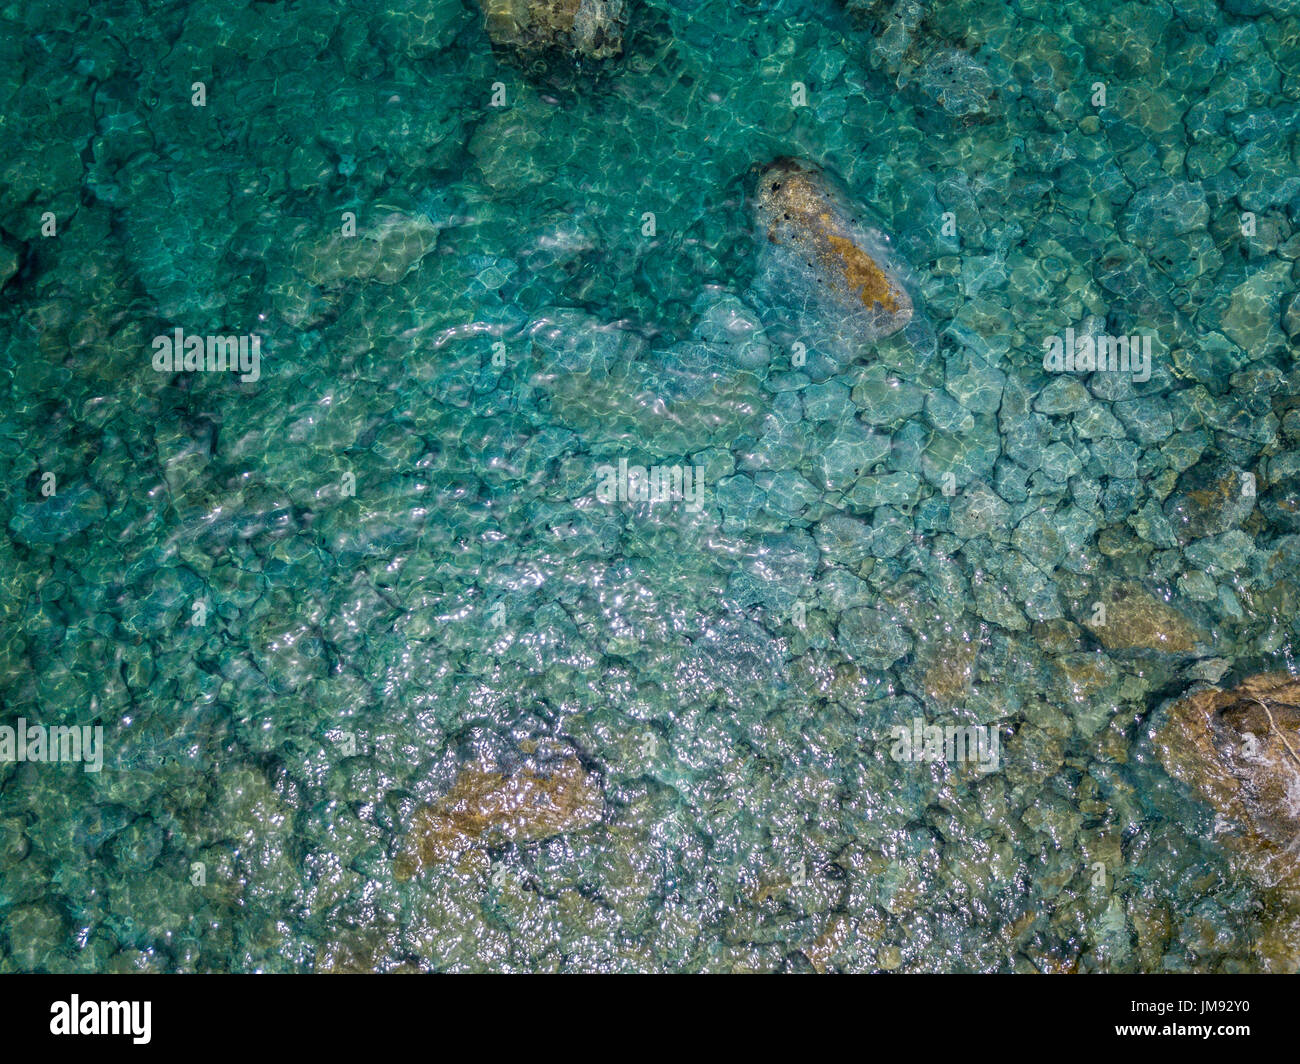 Vue aérienne de rochers sur la mer. Sommaire des fonds marins vu de dessus, l'eau transparente Banque D'Images